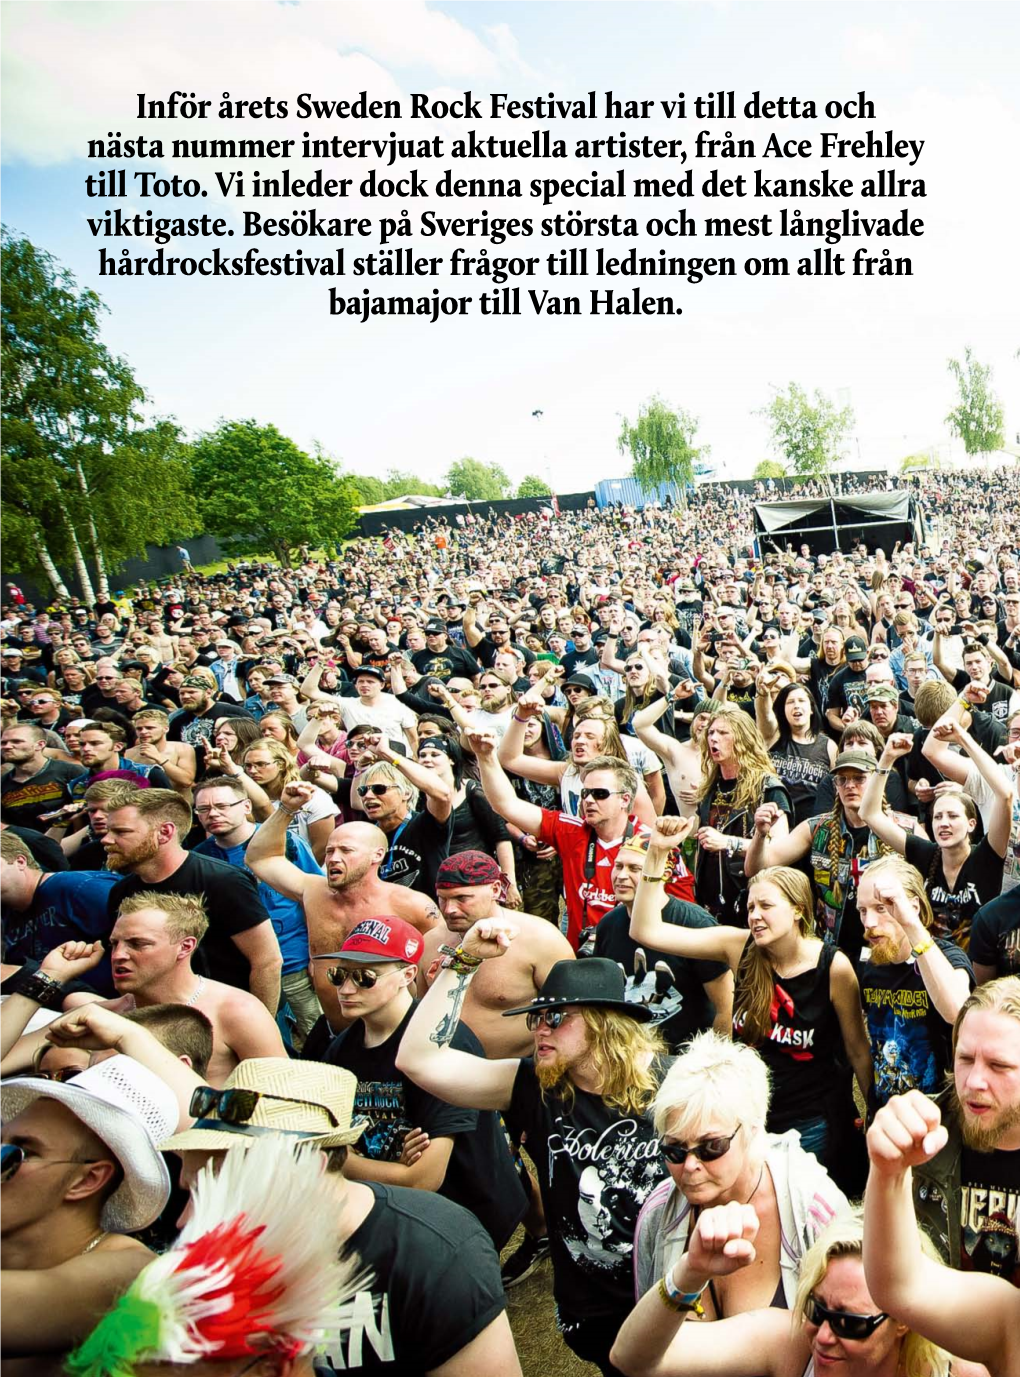 Inför Årets Sweden Rock Festival Har Vi Till Detta Och Nästa Nummer Intervjuat Aktuella Artister, Från Ace Frehley Till Toto